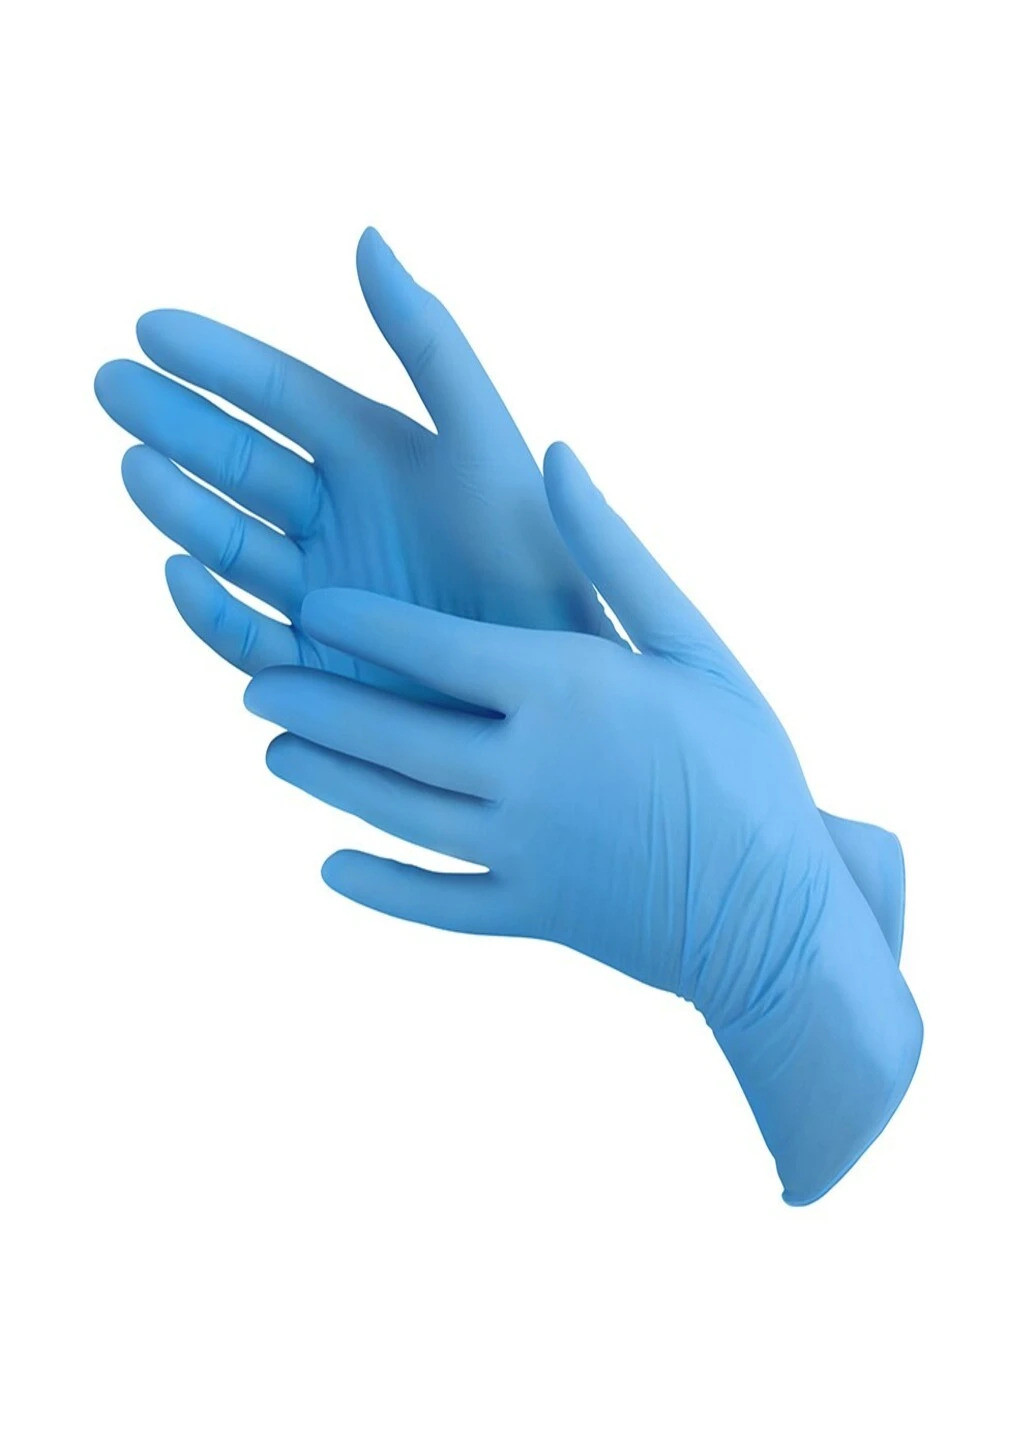 Перчатки нитриловые Vitals Blue смотровые текстурированные без пудры голубые размер XL 100 шт (3 г.) голубые Medicom (259569985)